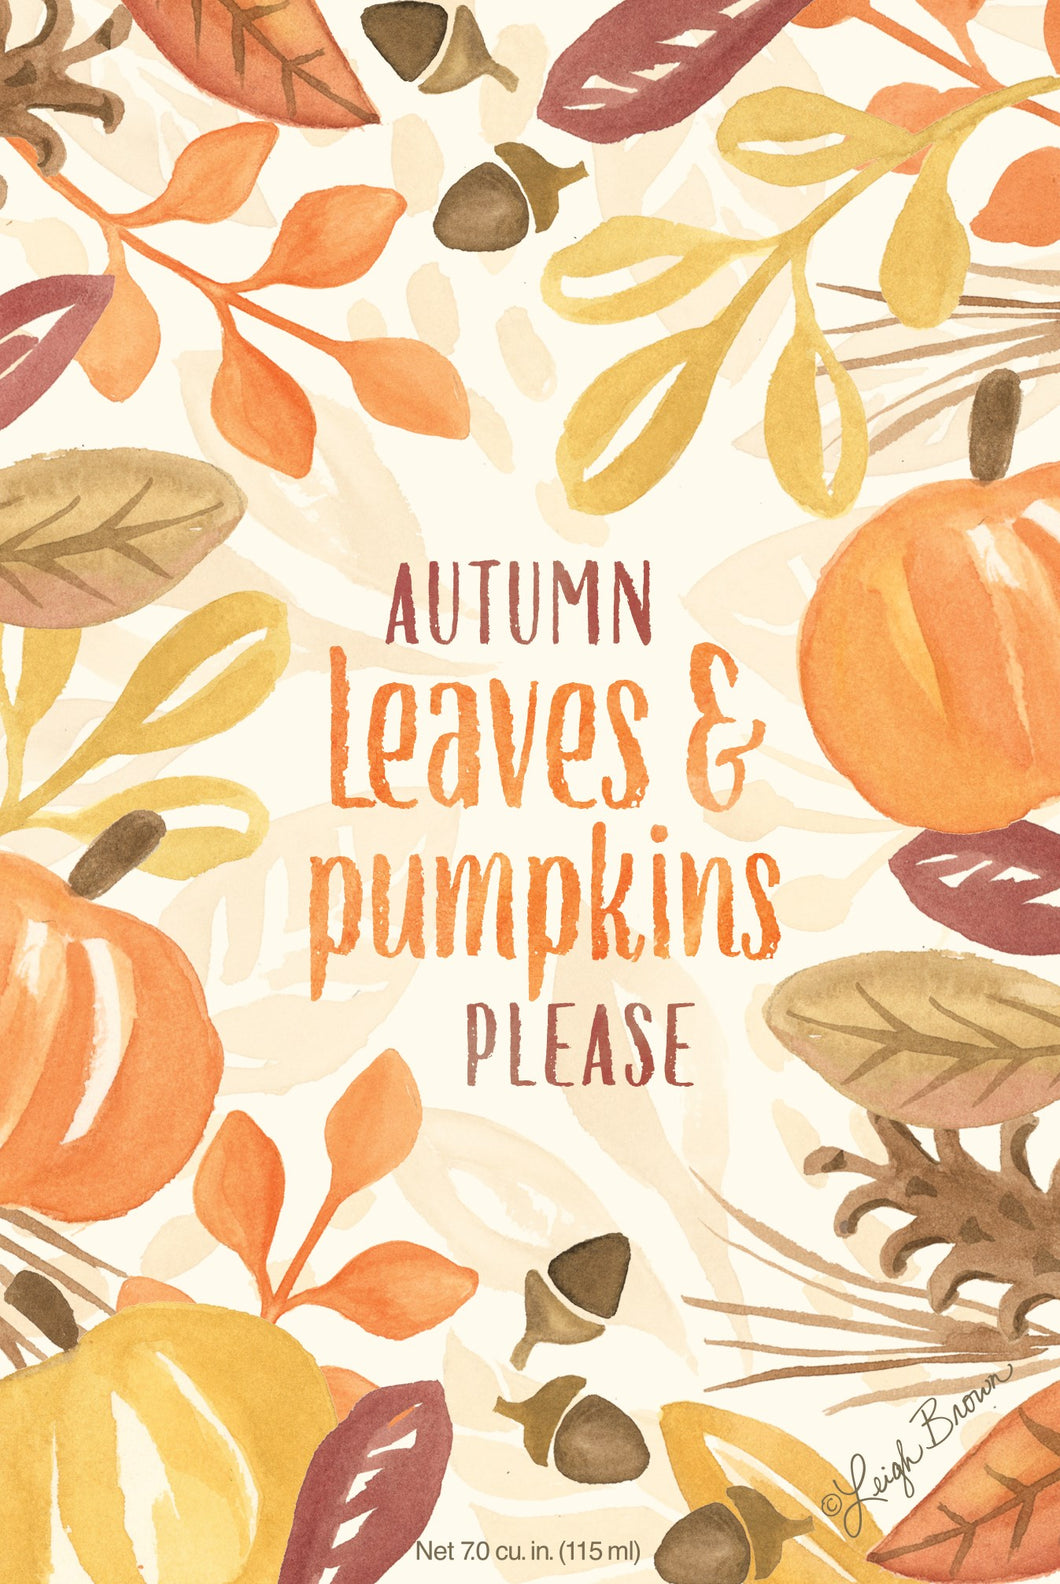 Autumn Leaves & Pumpkins Please - Sachet